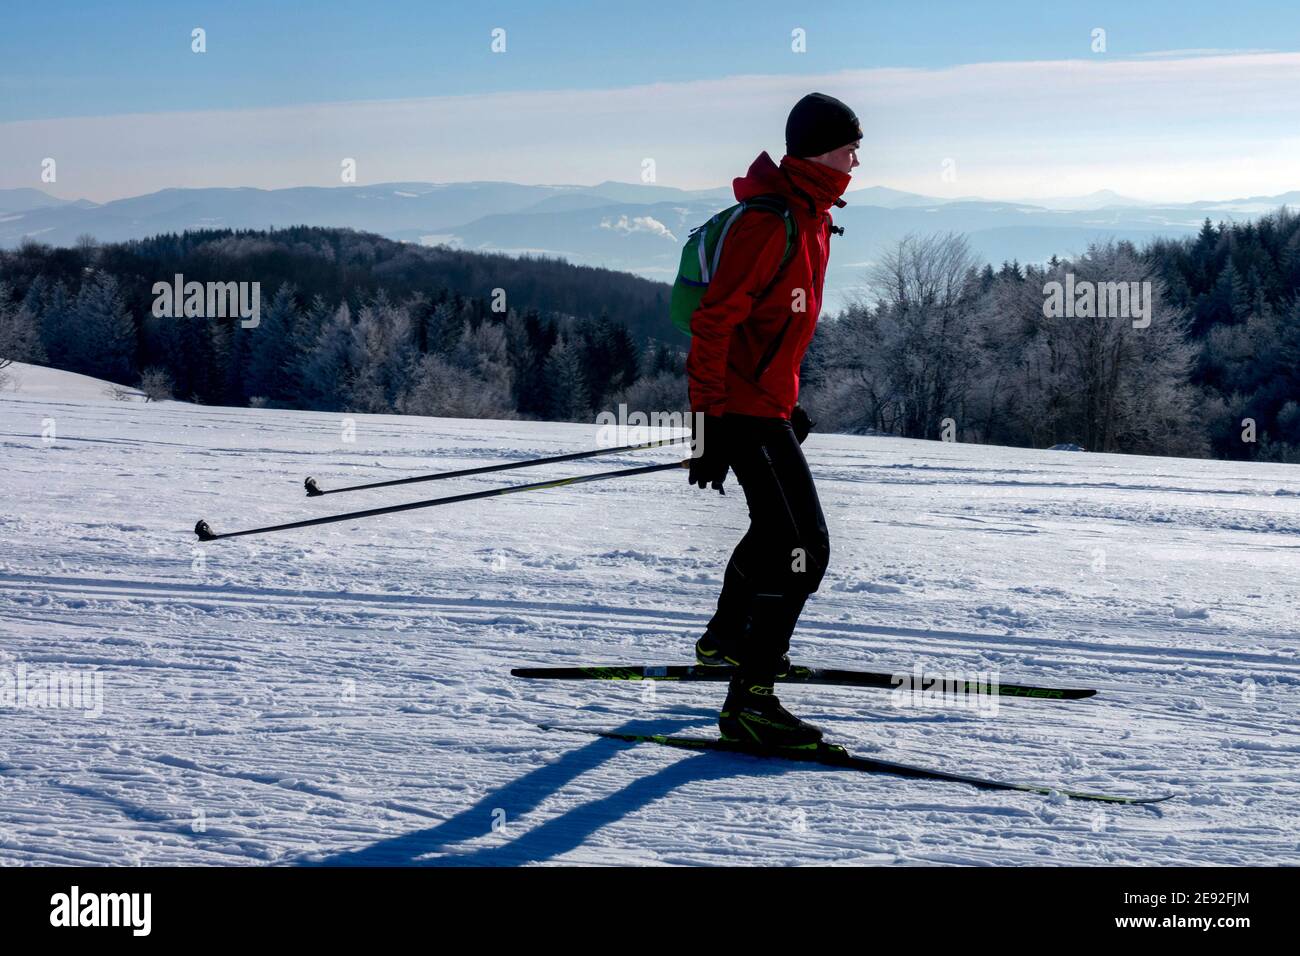 Man Skilanglauf auf einem Bergrücken mit Blick auf einen sonnigen Schnee Landschaft Berge Tschechische Republik Stockfoto